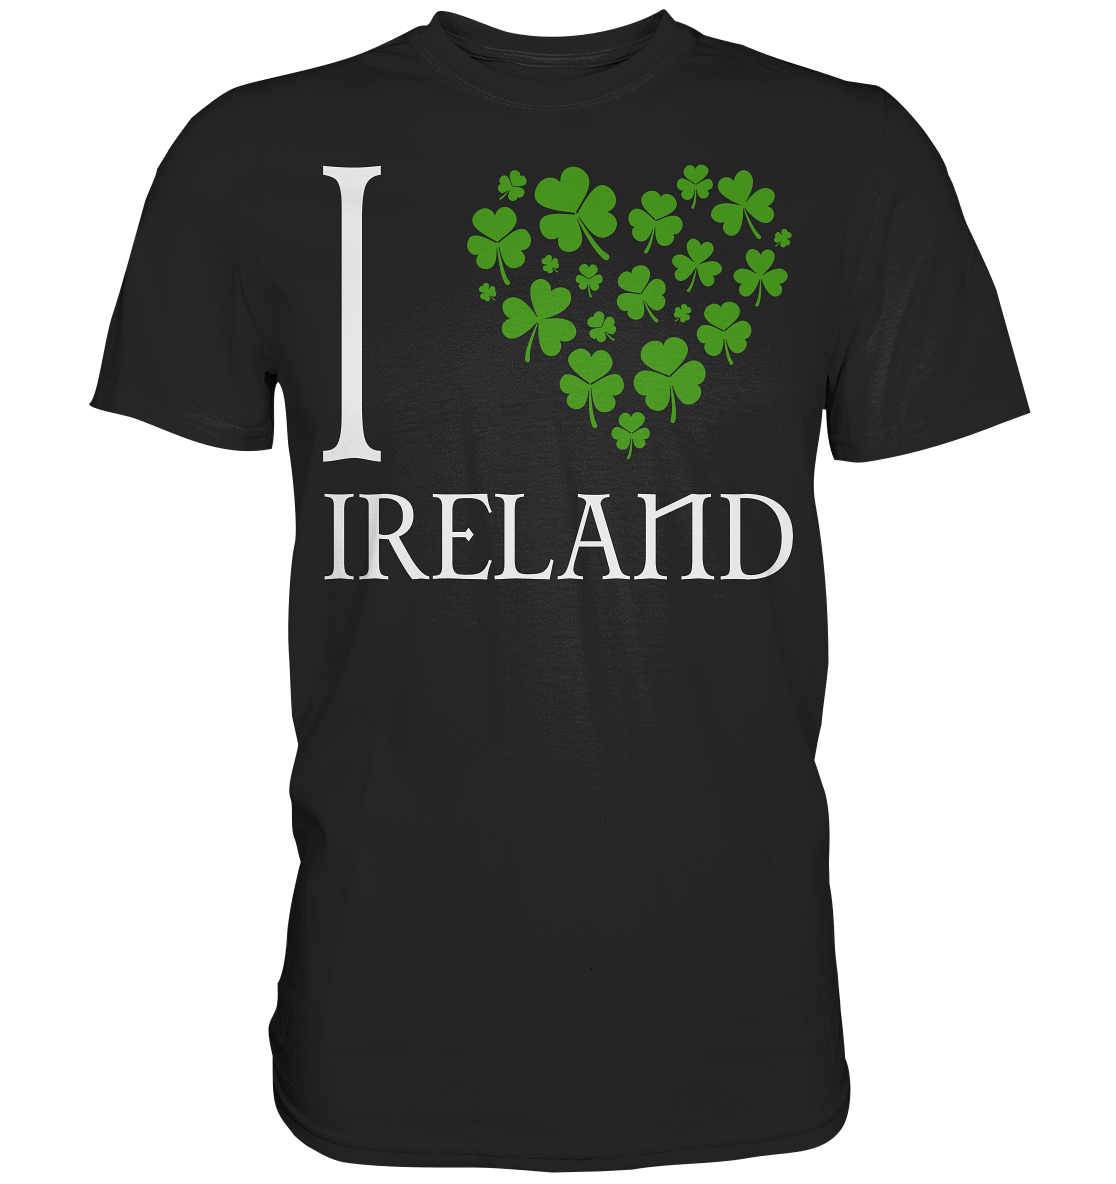 I Love Ireland - Premium Shirt